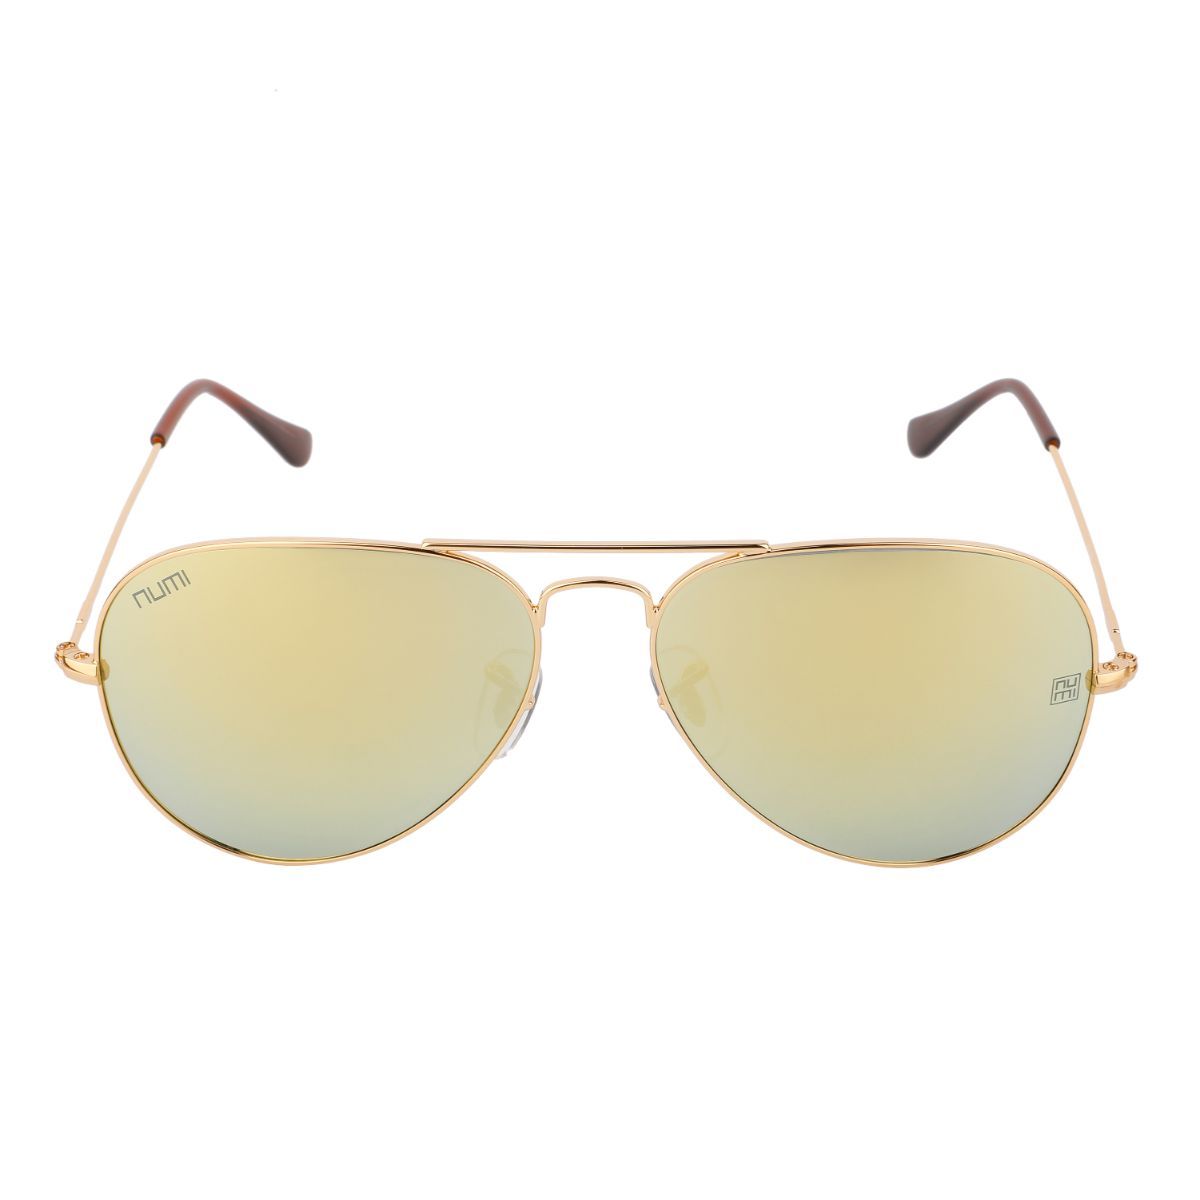 Share 217+ cheap gold aviator sunglasses best